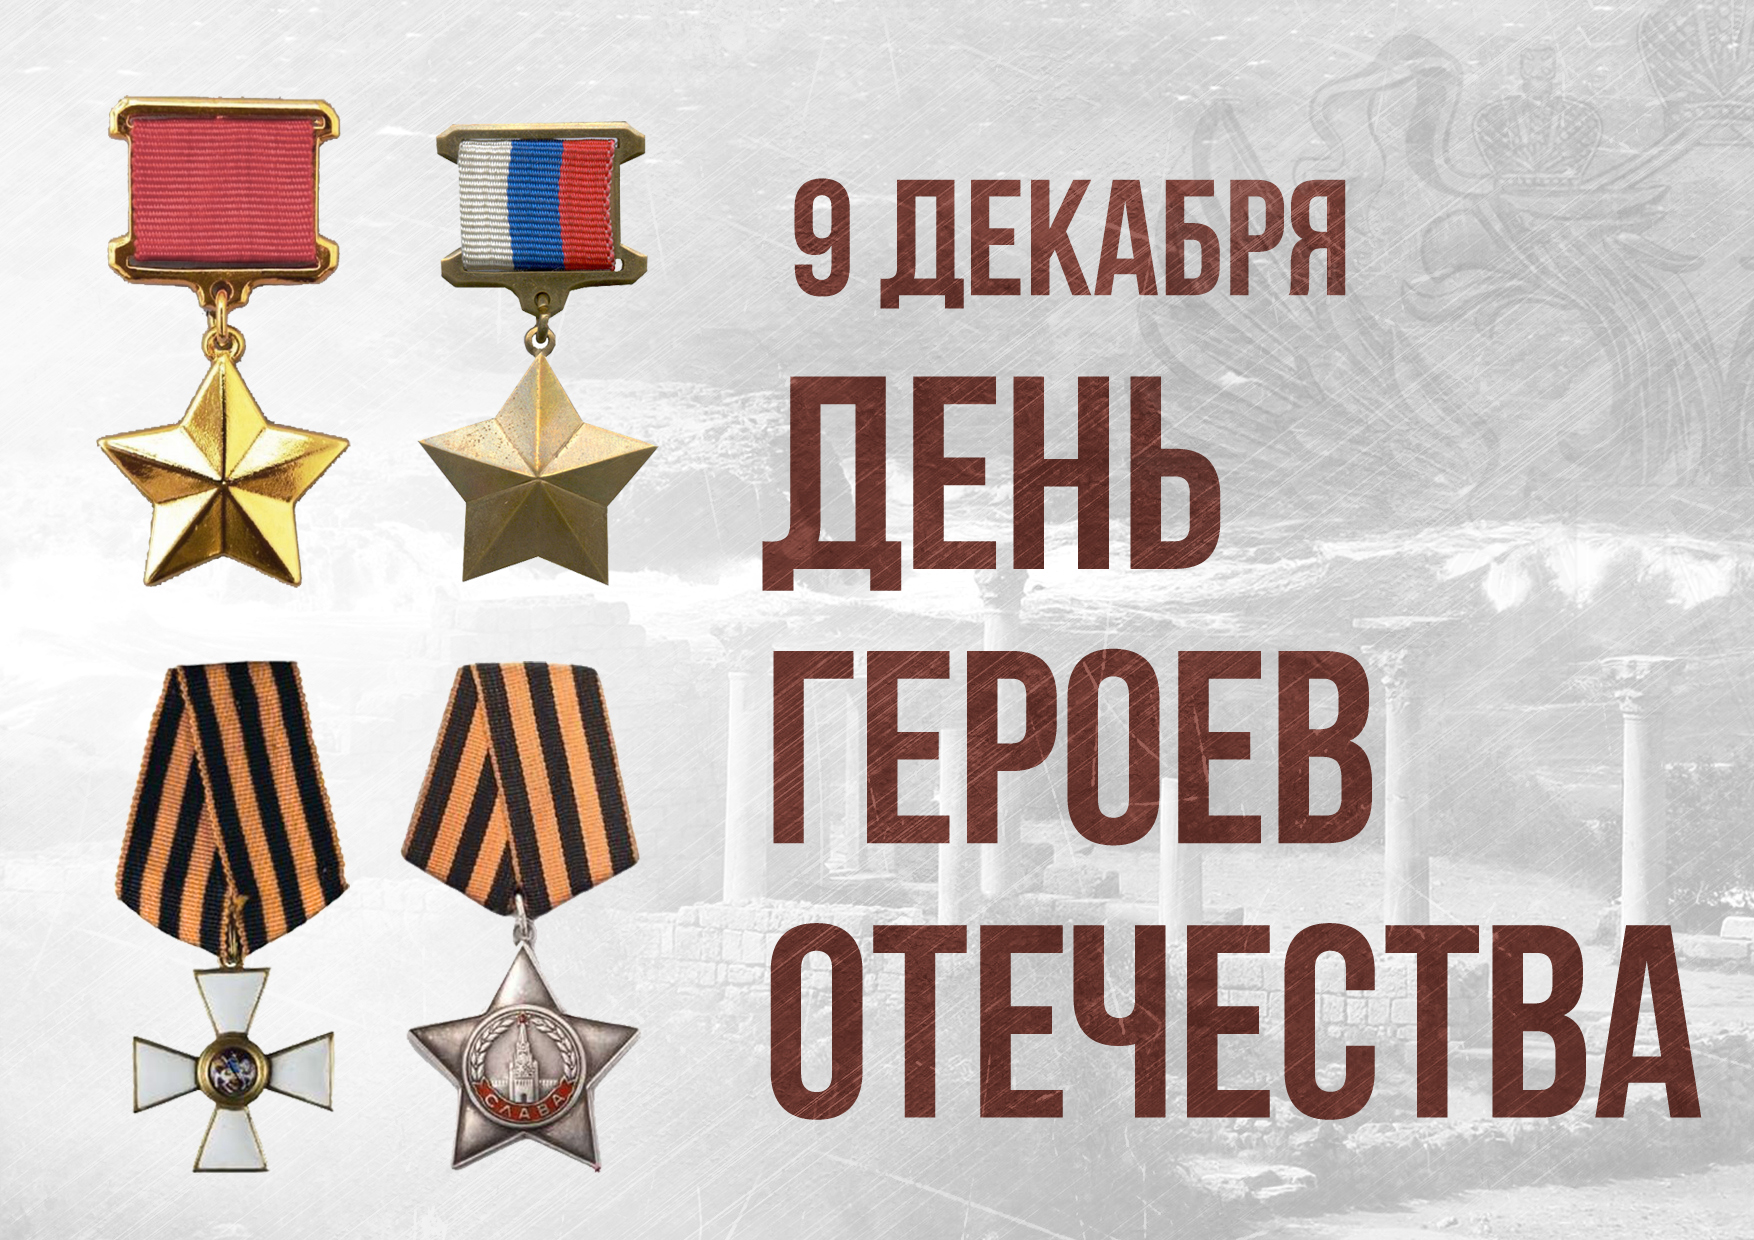 9 декабря - Памятная дата России - День героев Отечества.